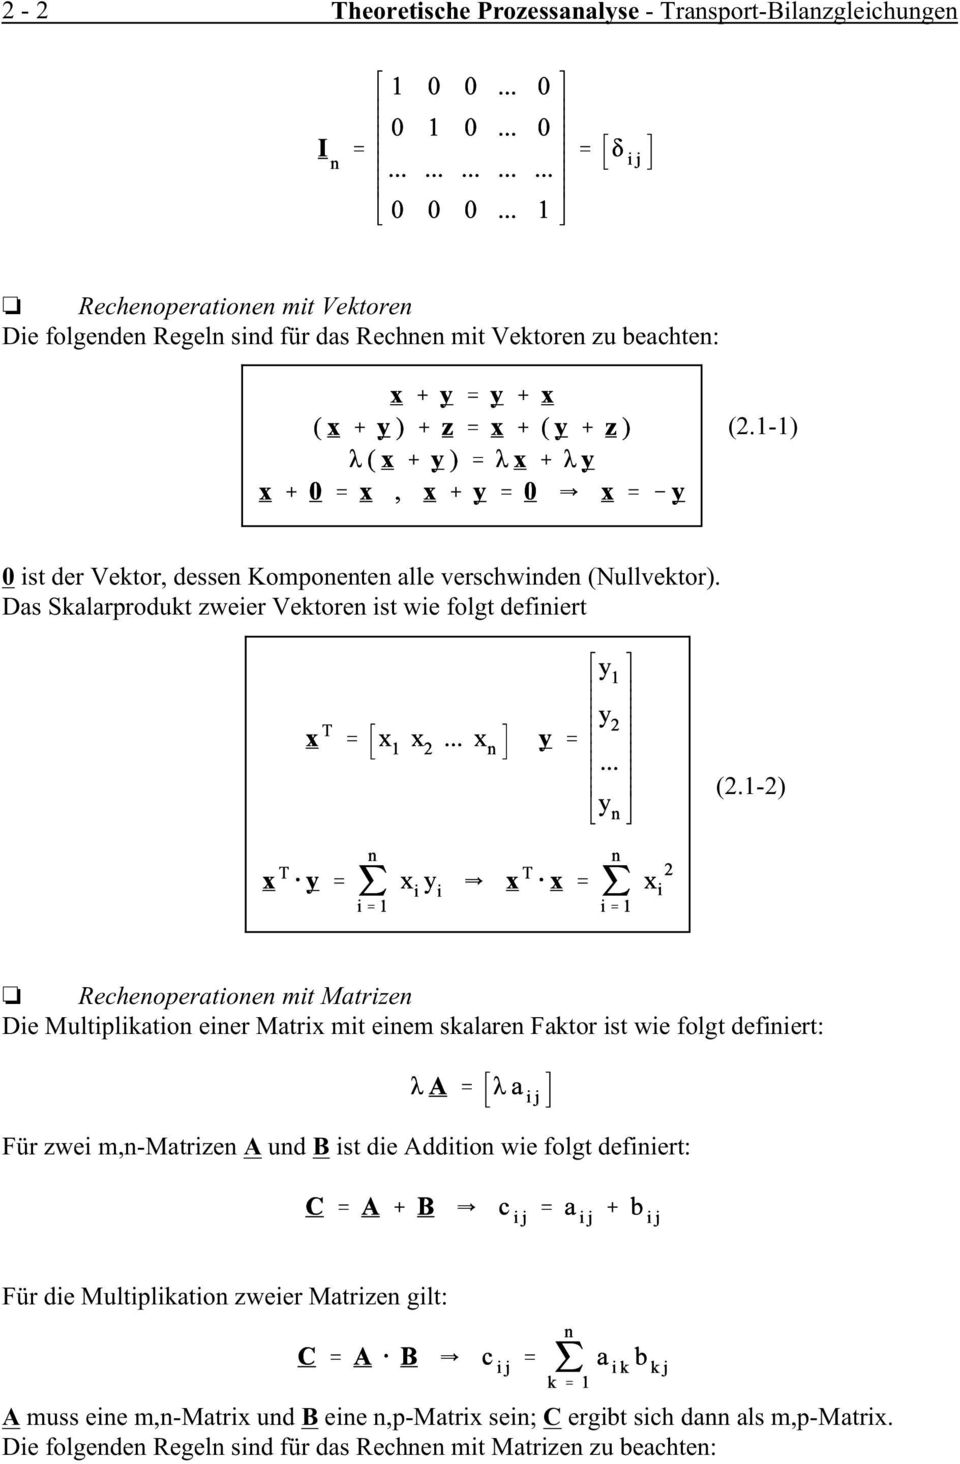 1-2) Rechenoperationen mit Matrizen Die Multiplikation einer Matrix mit einem skalaren Faktor ist wie folgt definiert: Für zwei m,n-matrizen A und B ist die Addition wie